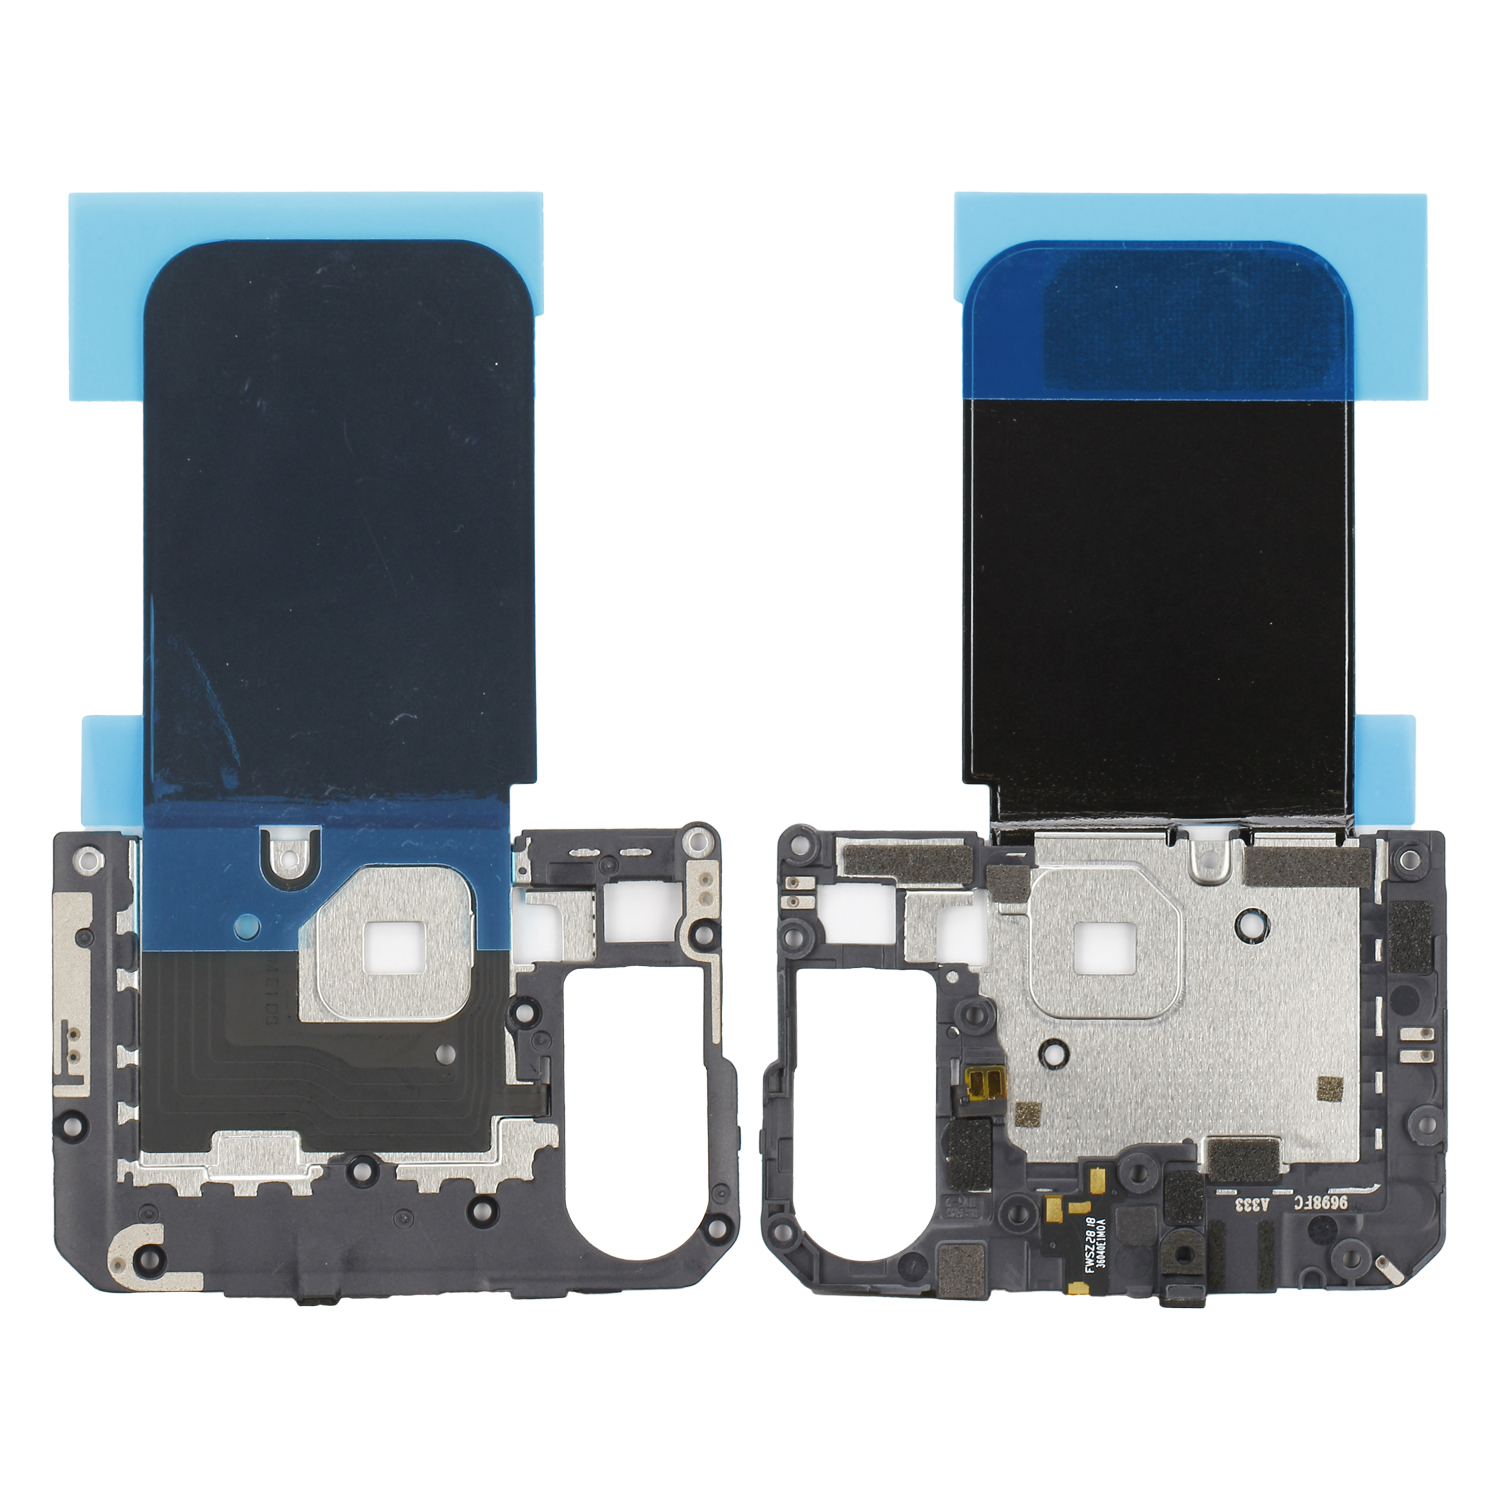 Xiaomi Mi 8 Internal Cover